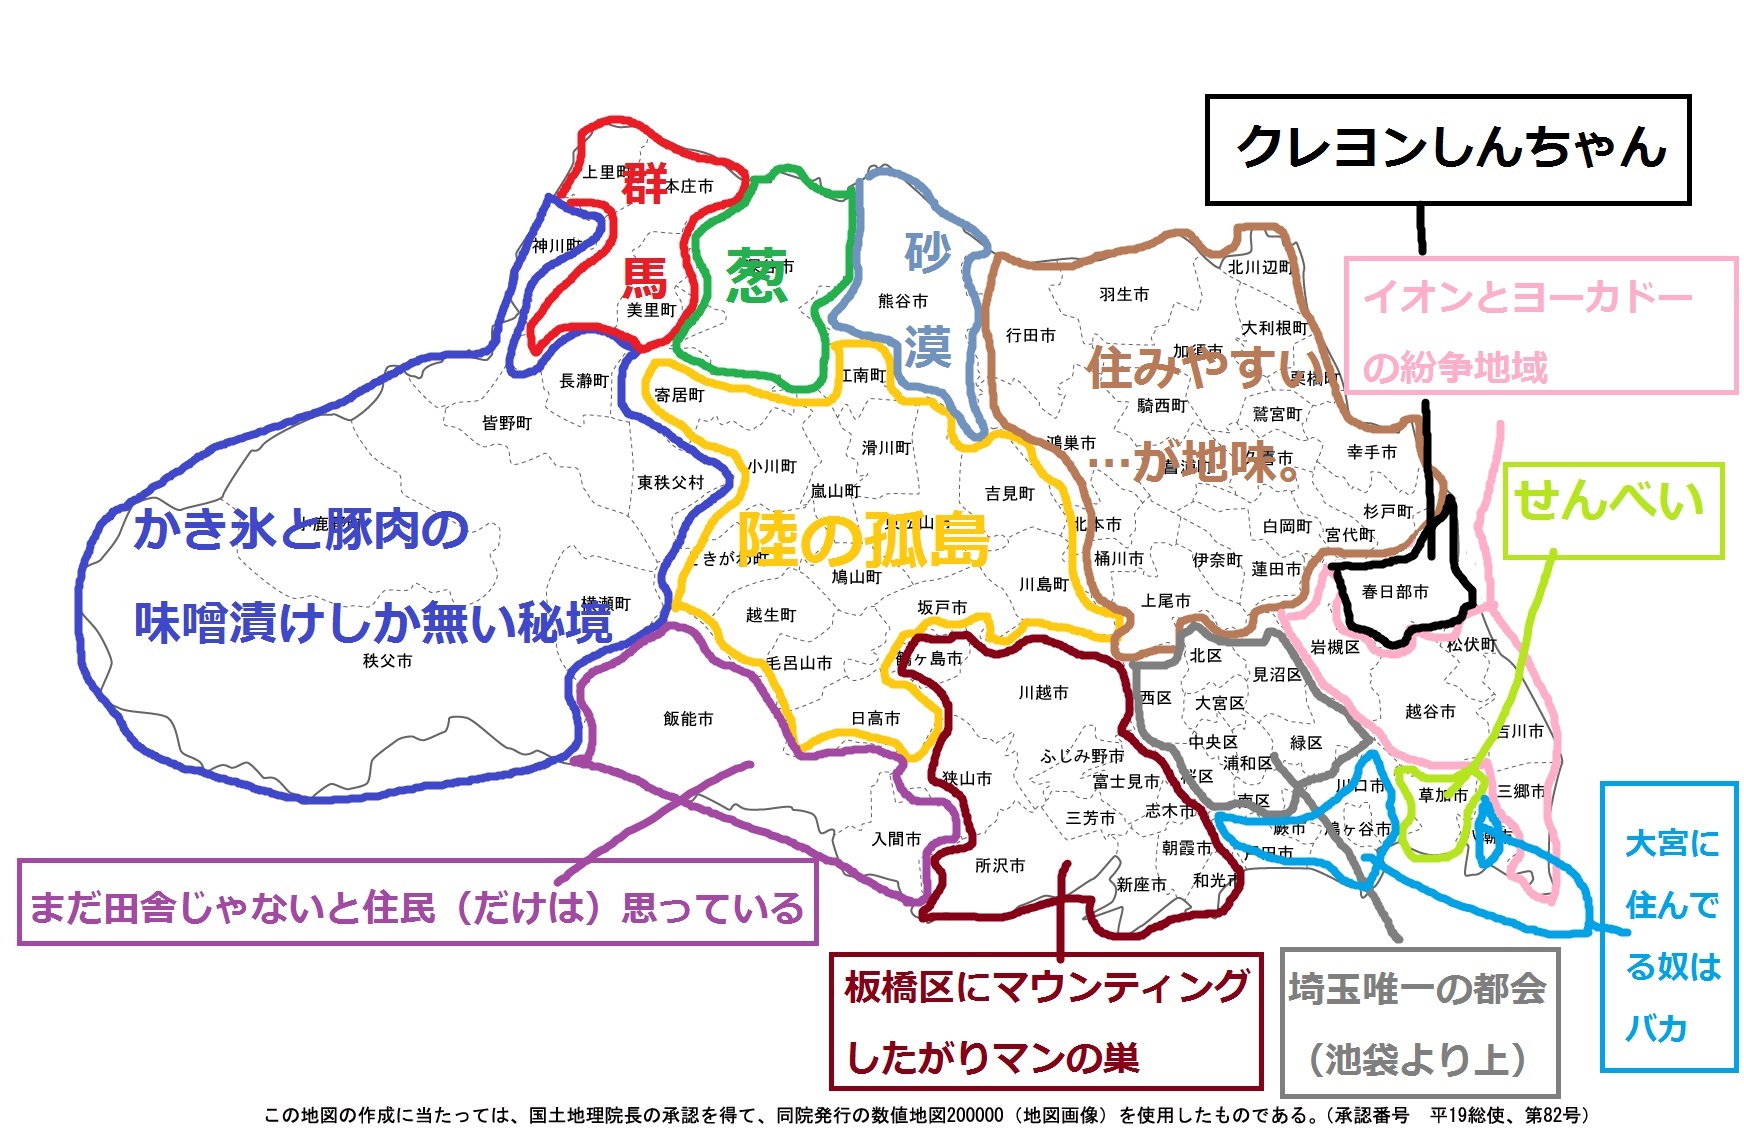 埼玉県出身者が作った 埼玉県は大体こんな感じ ってマップ 2015年2月20日 エキサイトニュース